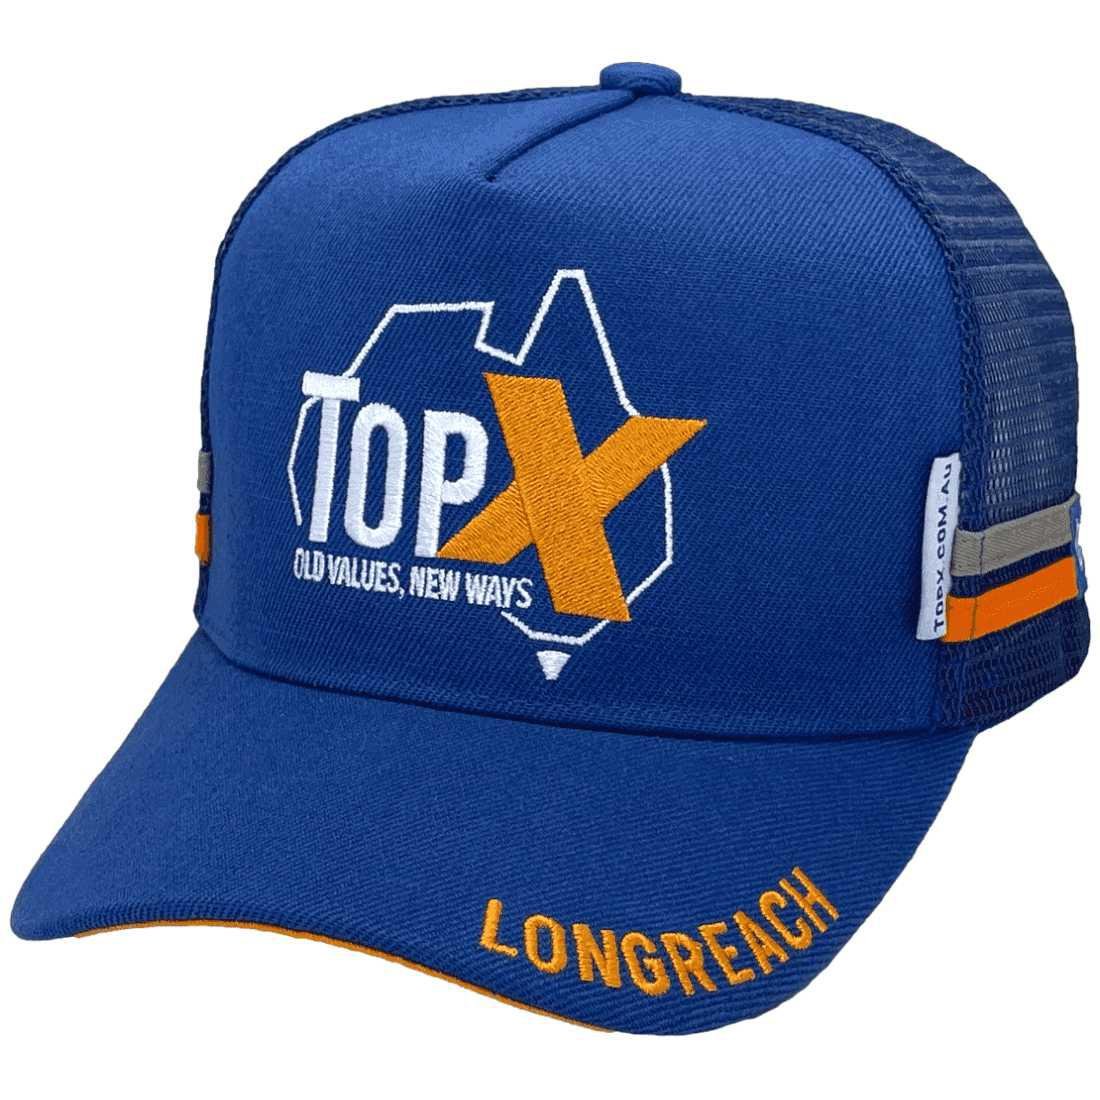 TopX Midrange Aussie Trucker Hat -Acrylic